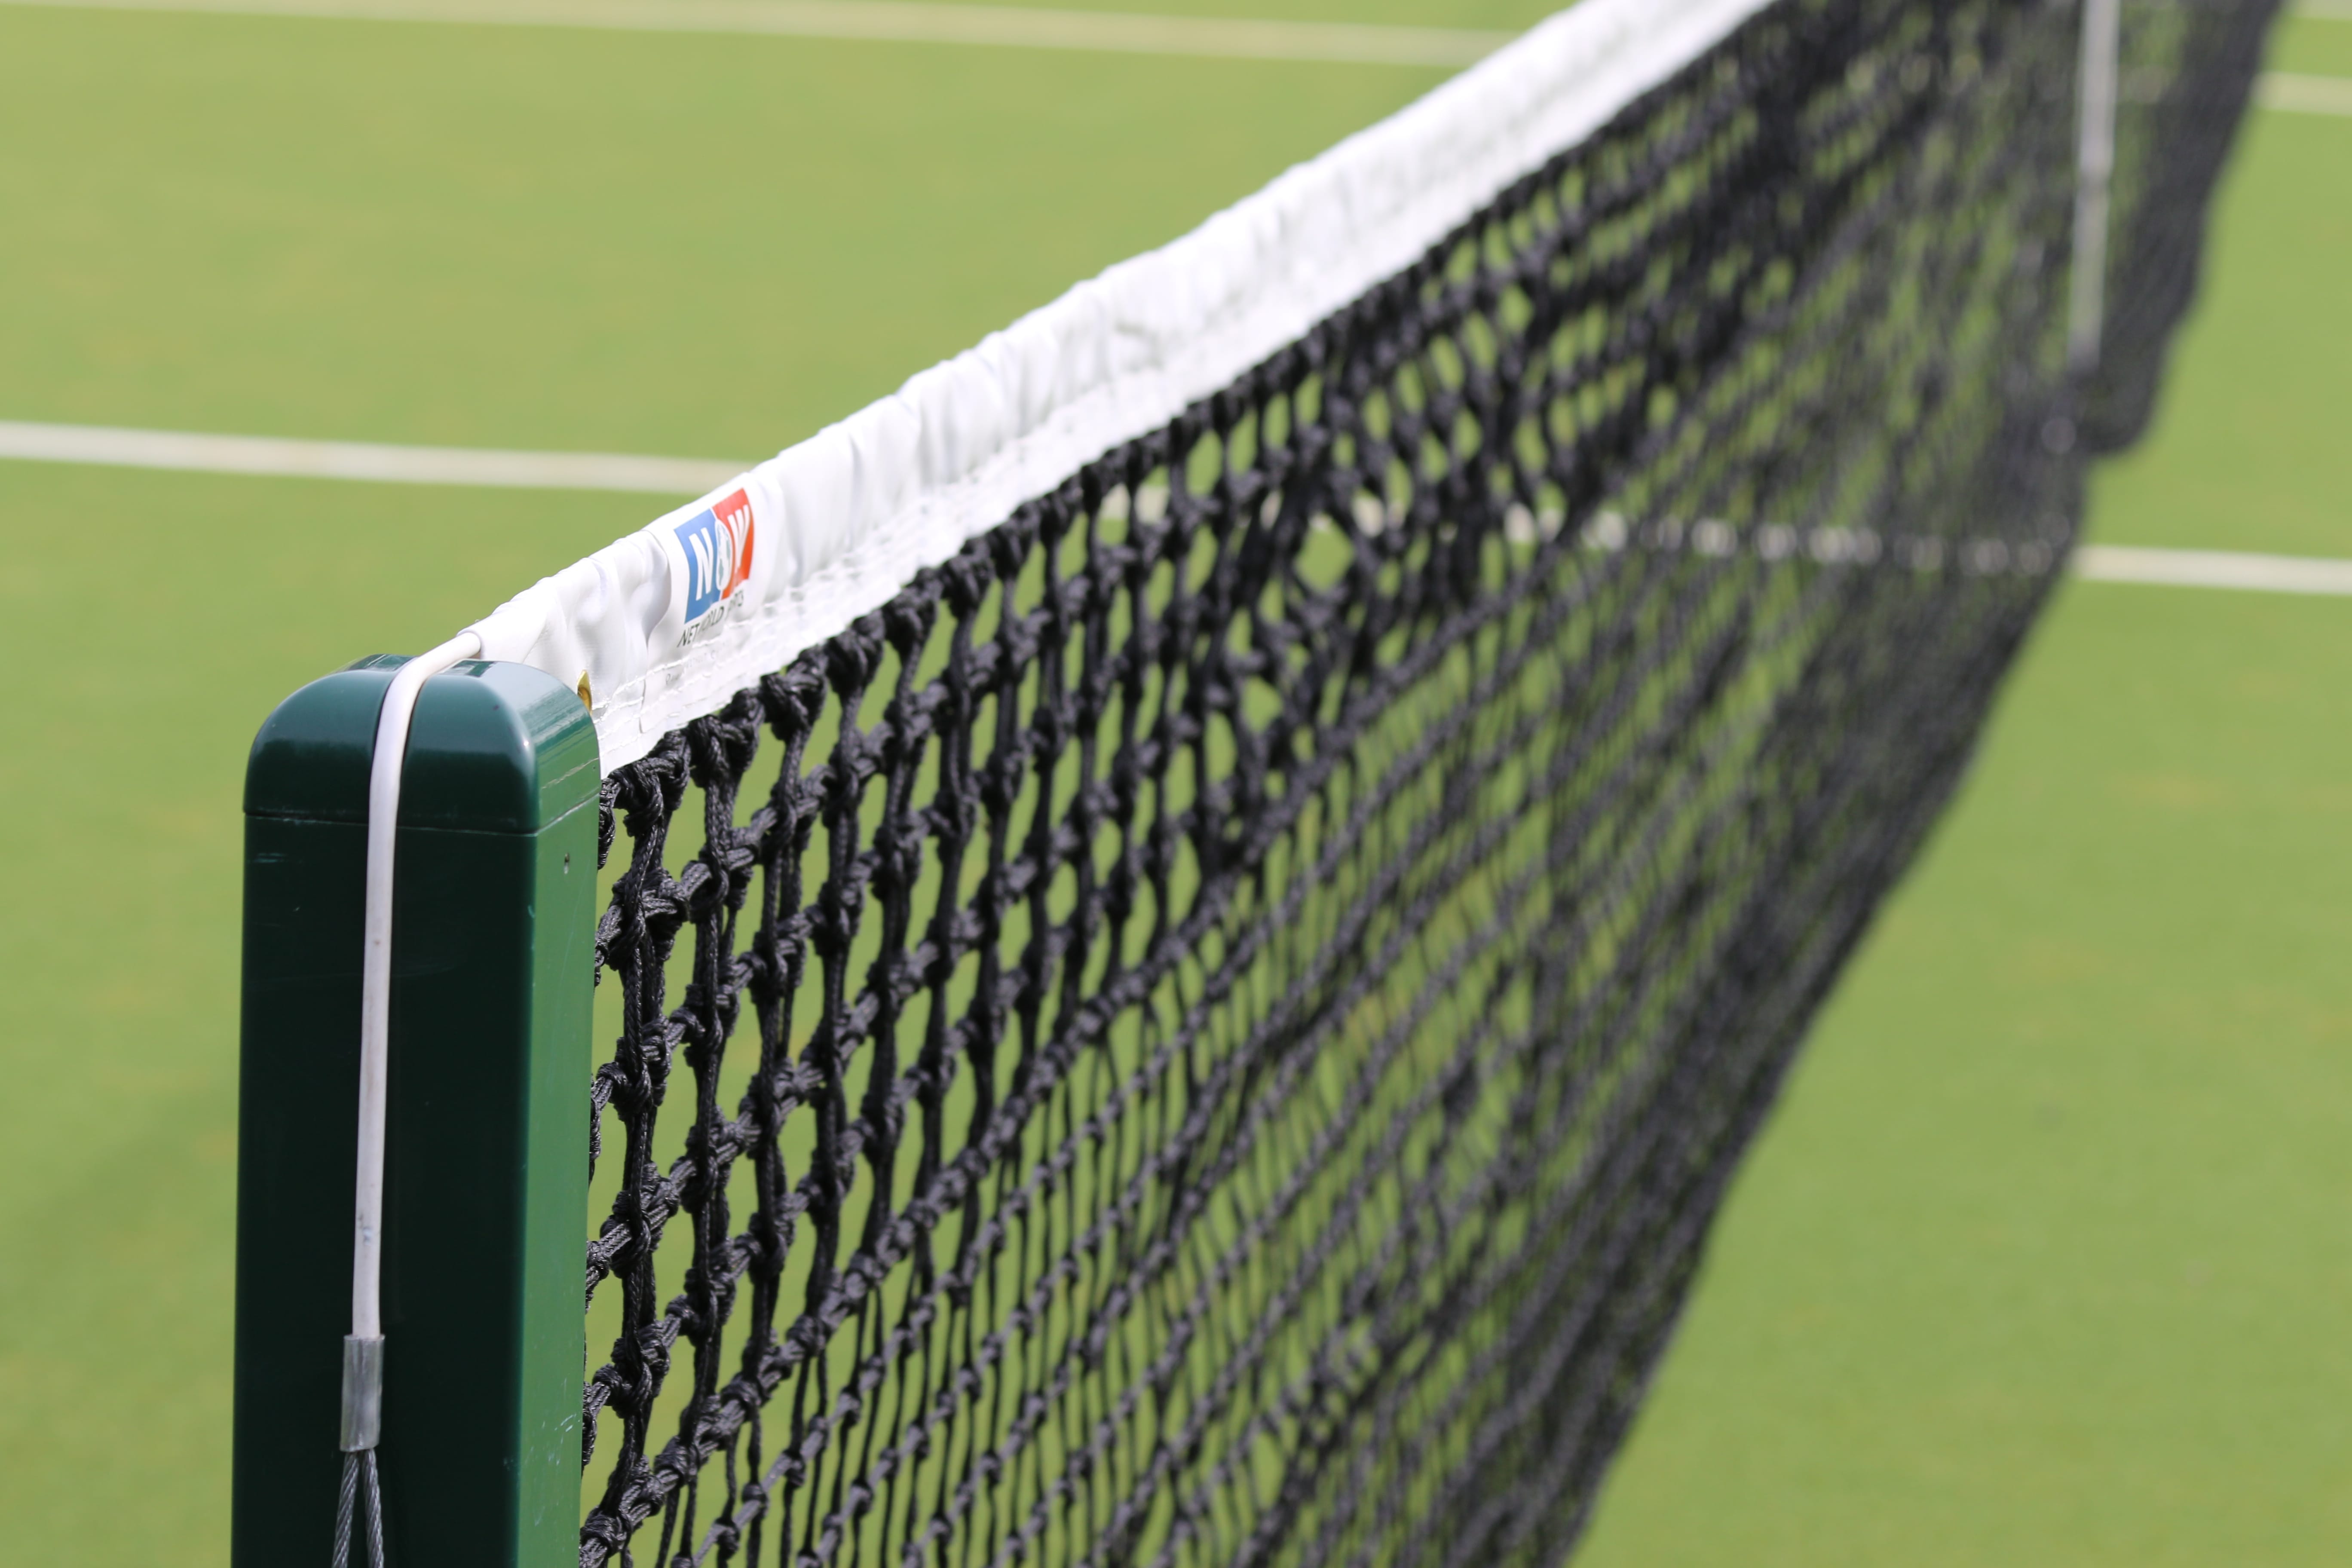 Tennis Court Nets